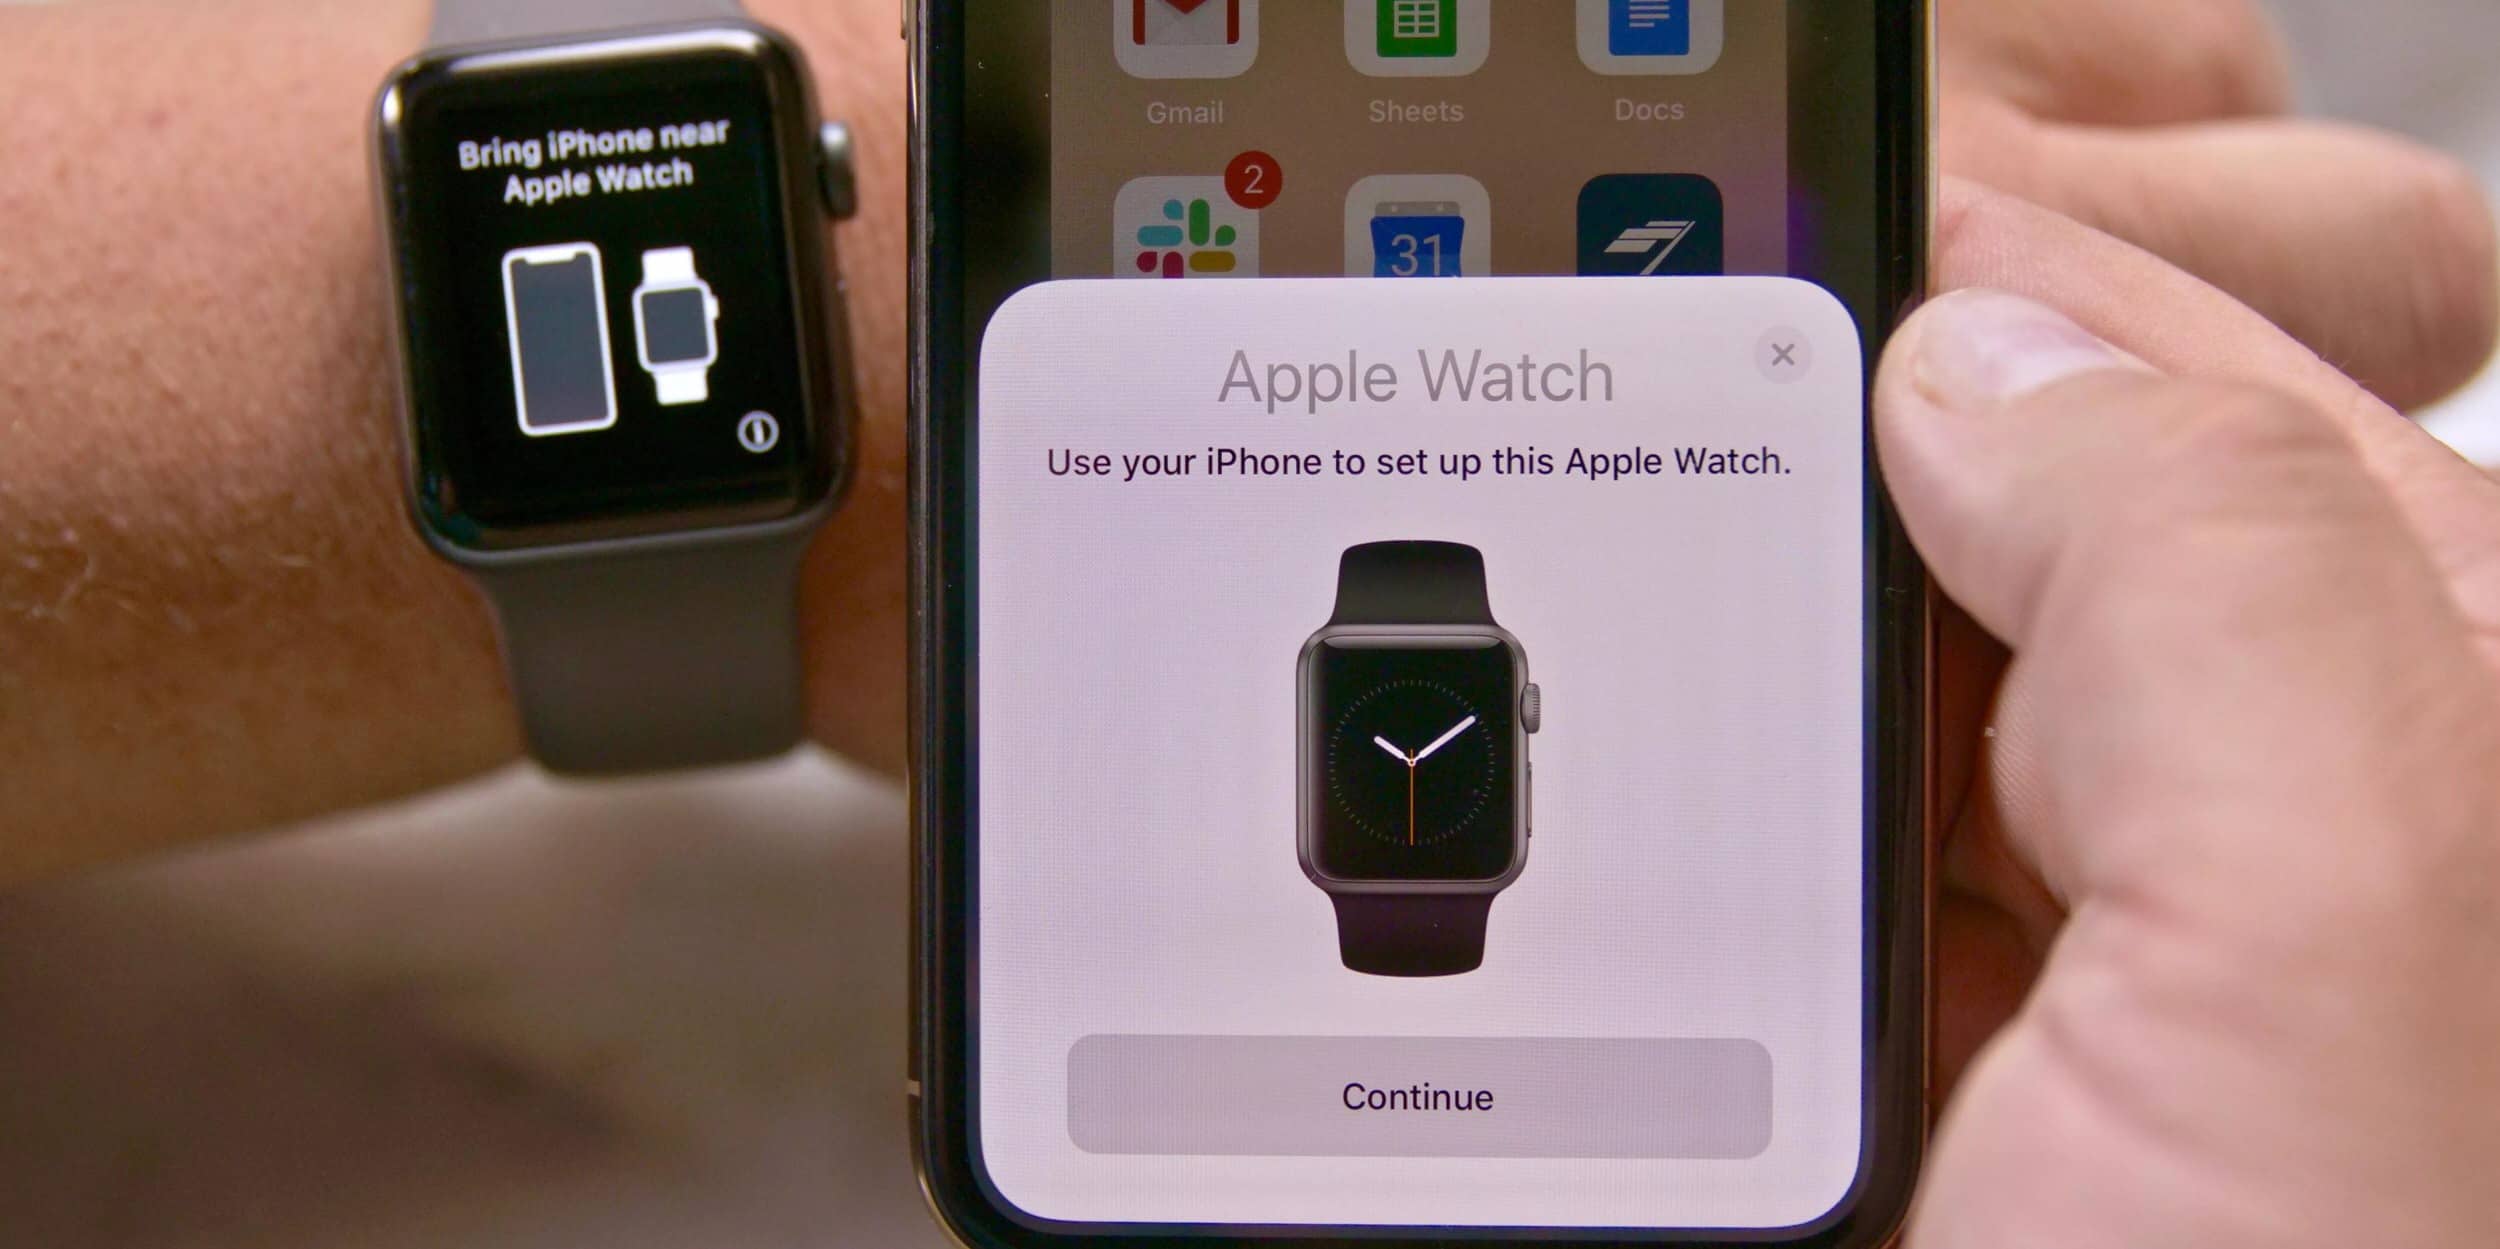 iOS 14.5 thêm tuỳ chọn mở khoá iPhone bằng Apple Watch nếu bạn đang đeo khẩu trang